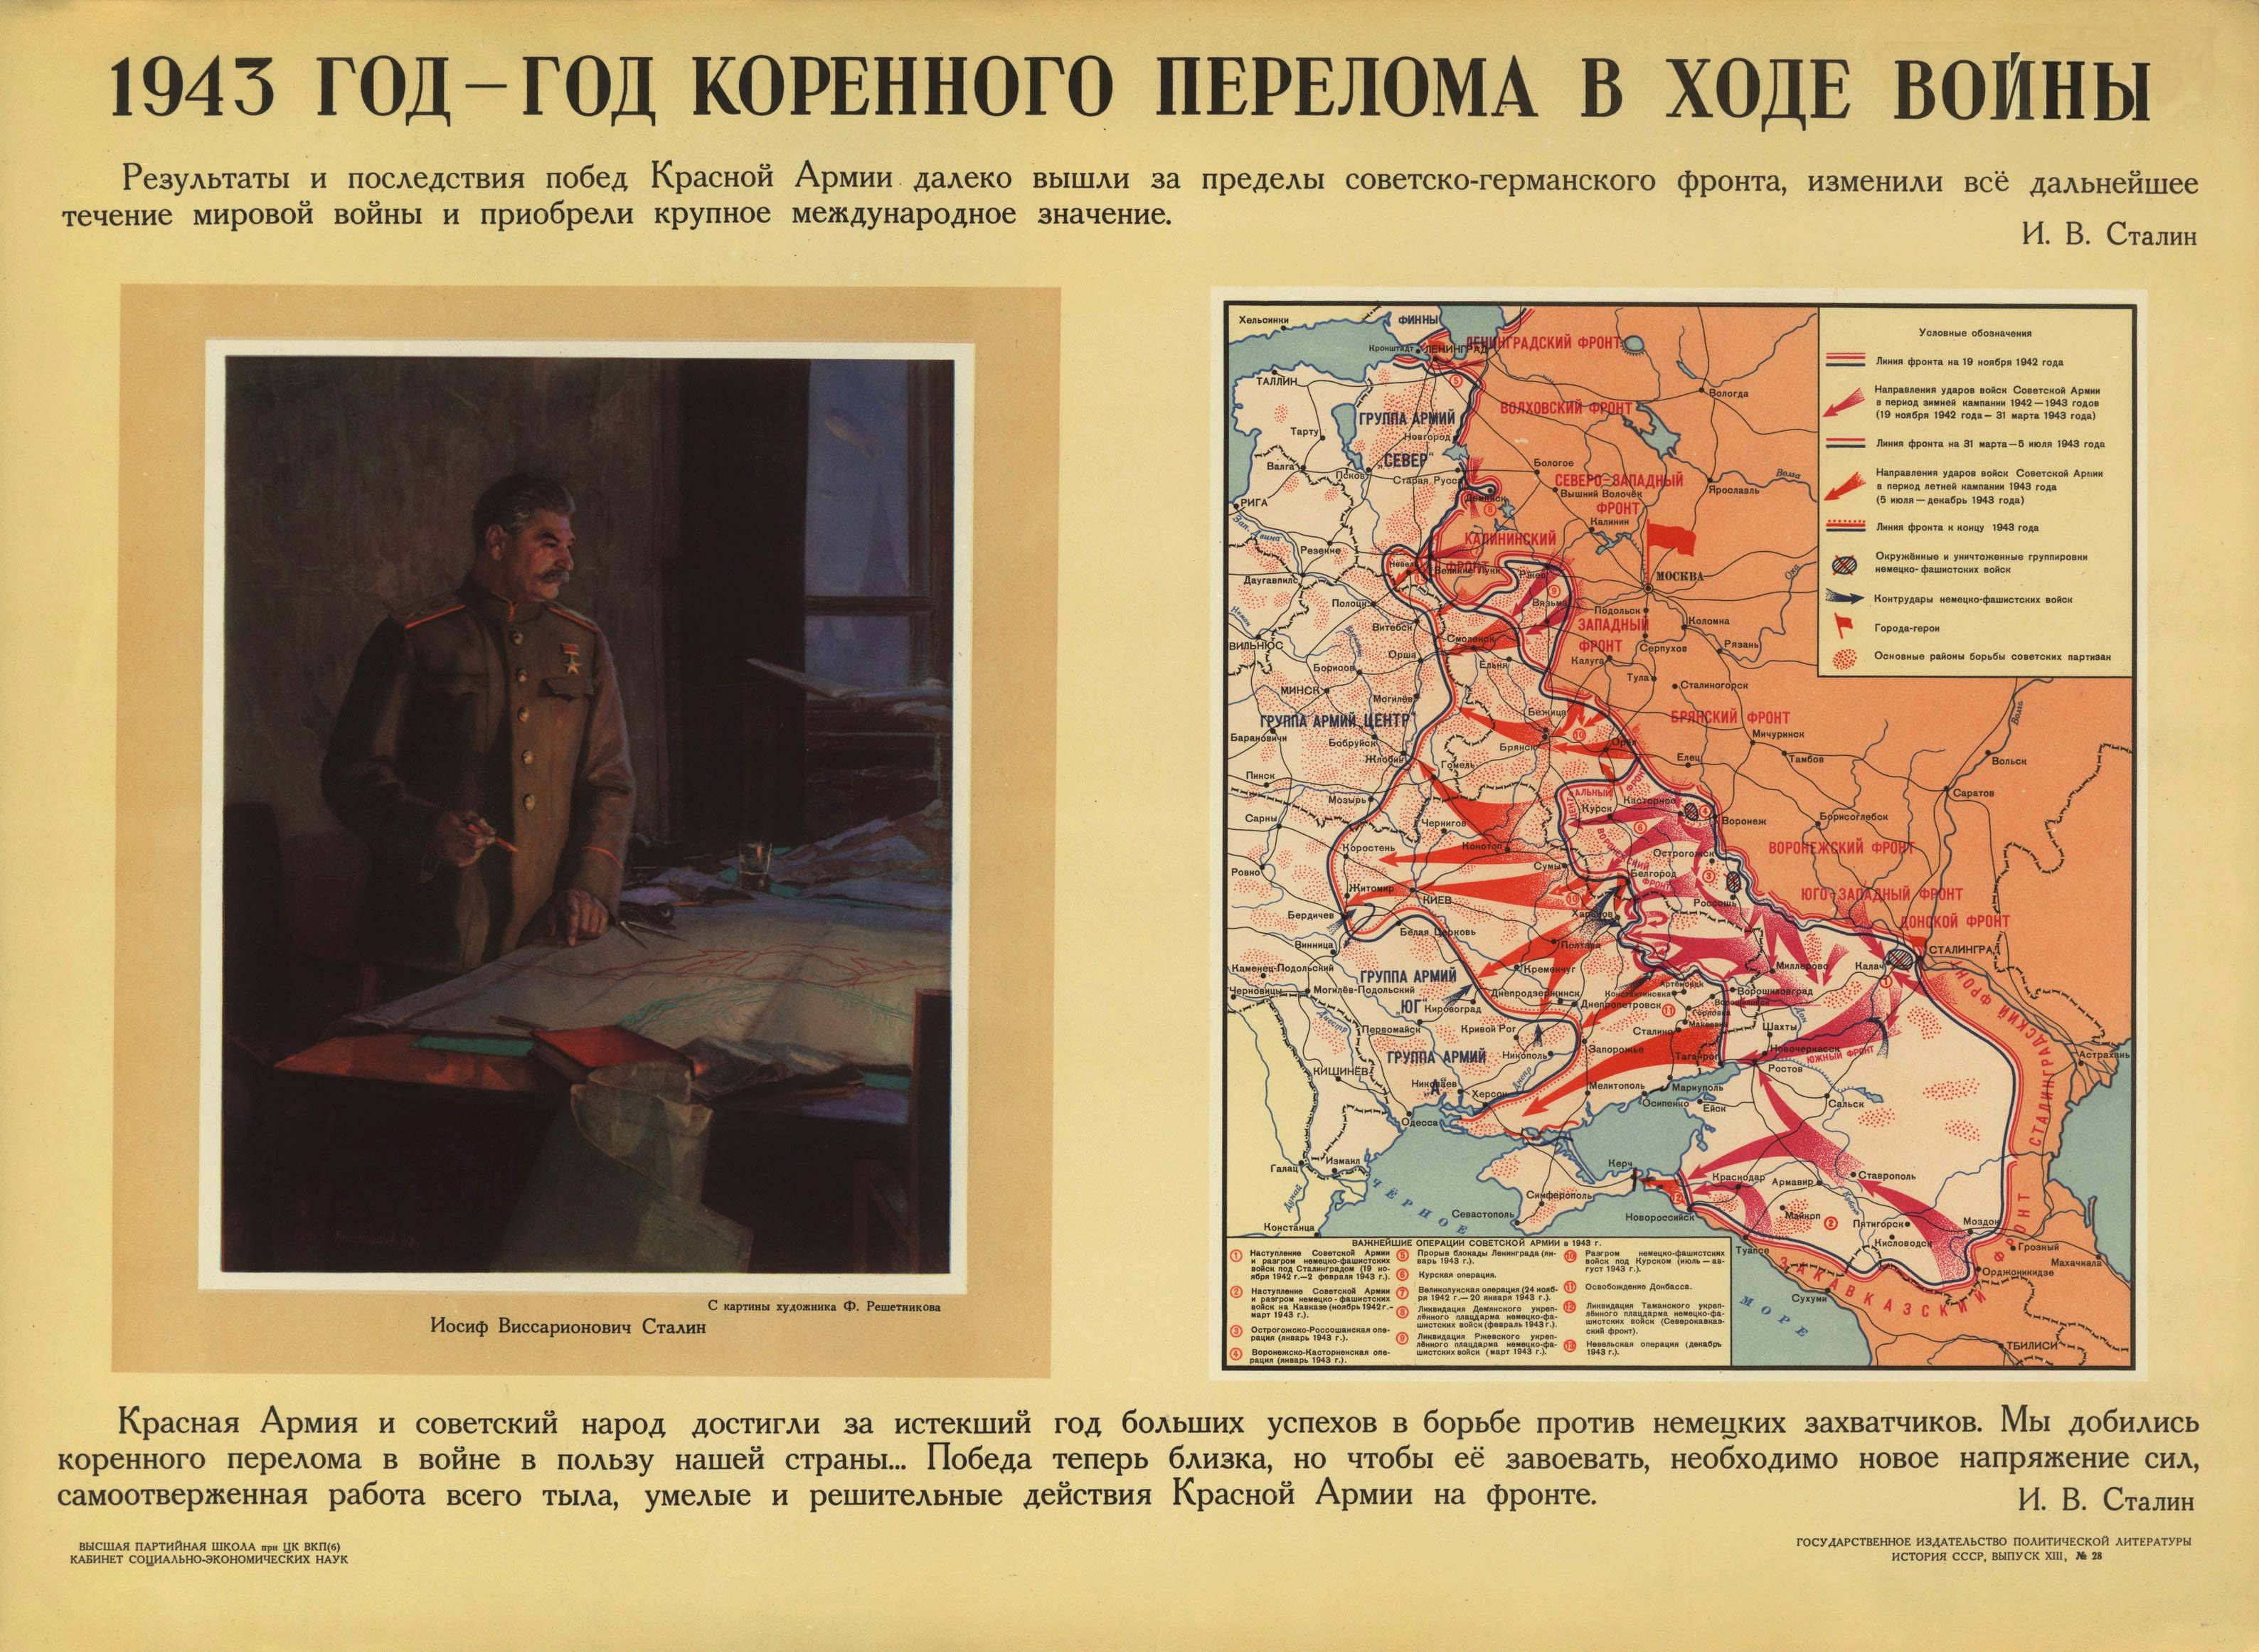 10 Сталинских ударов Курская дуга. Карта десять сталинских ударов Великой Отечественной войны. 10 Сталинских ударов 1944 таблица.